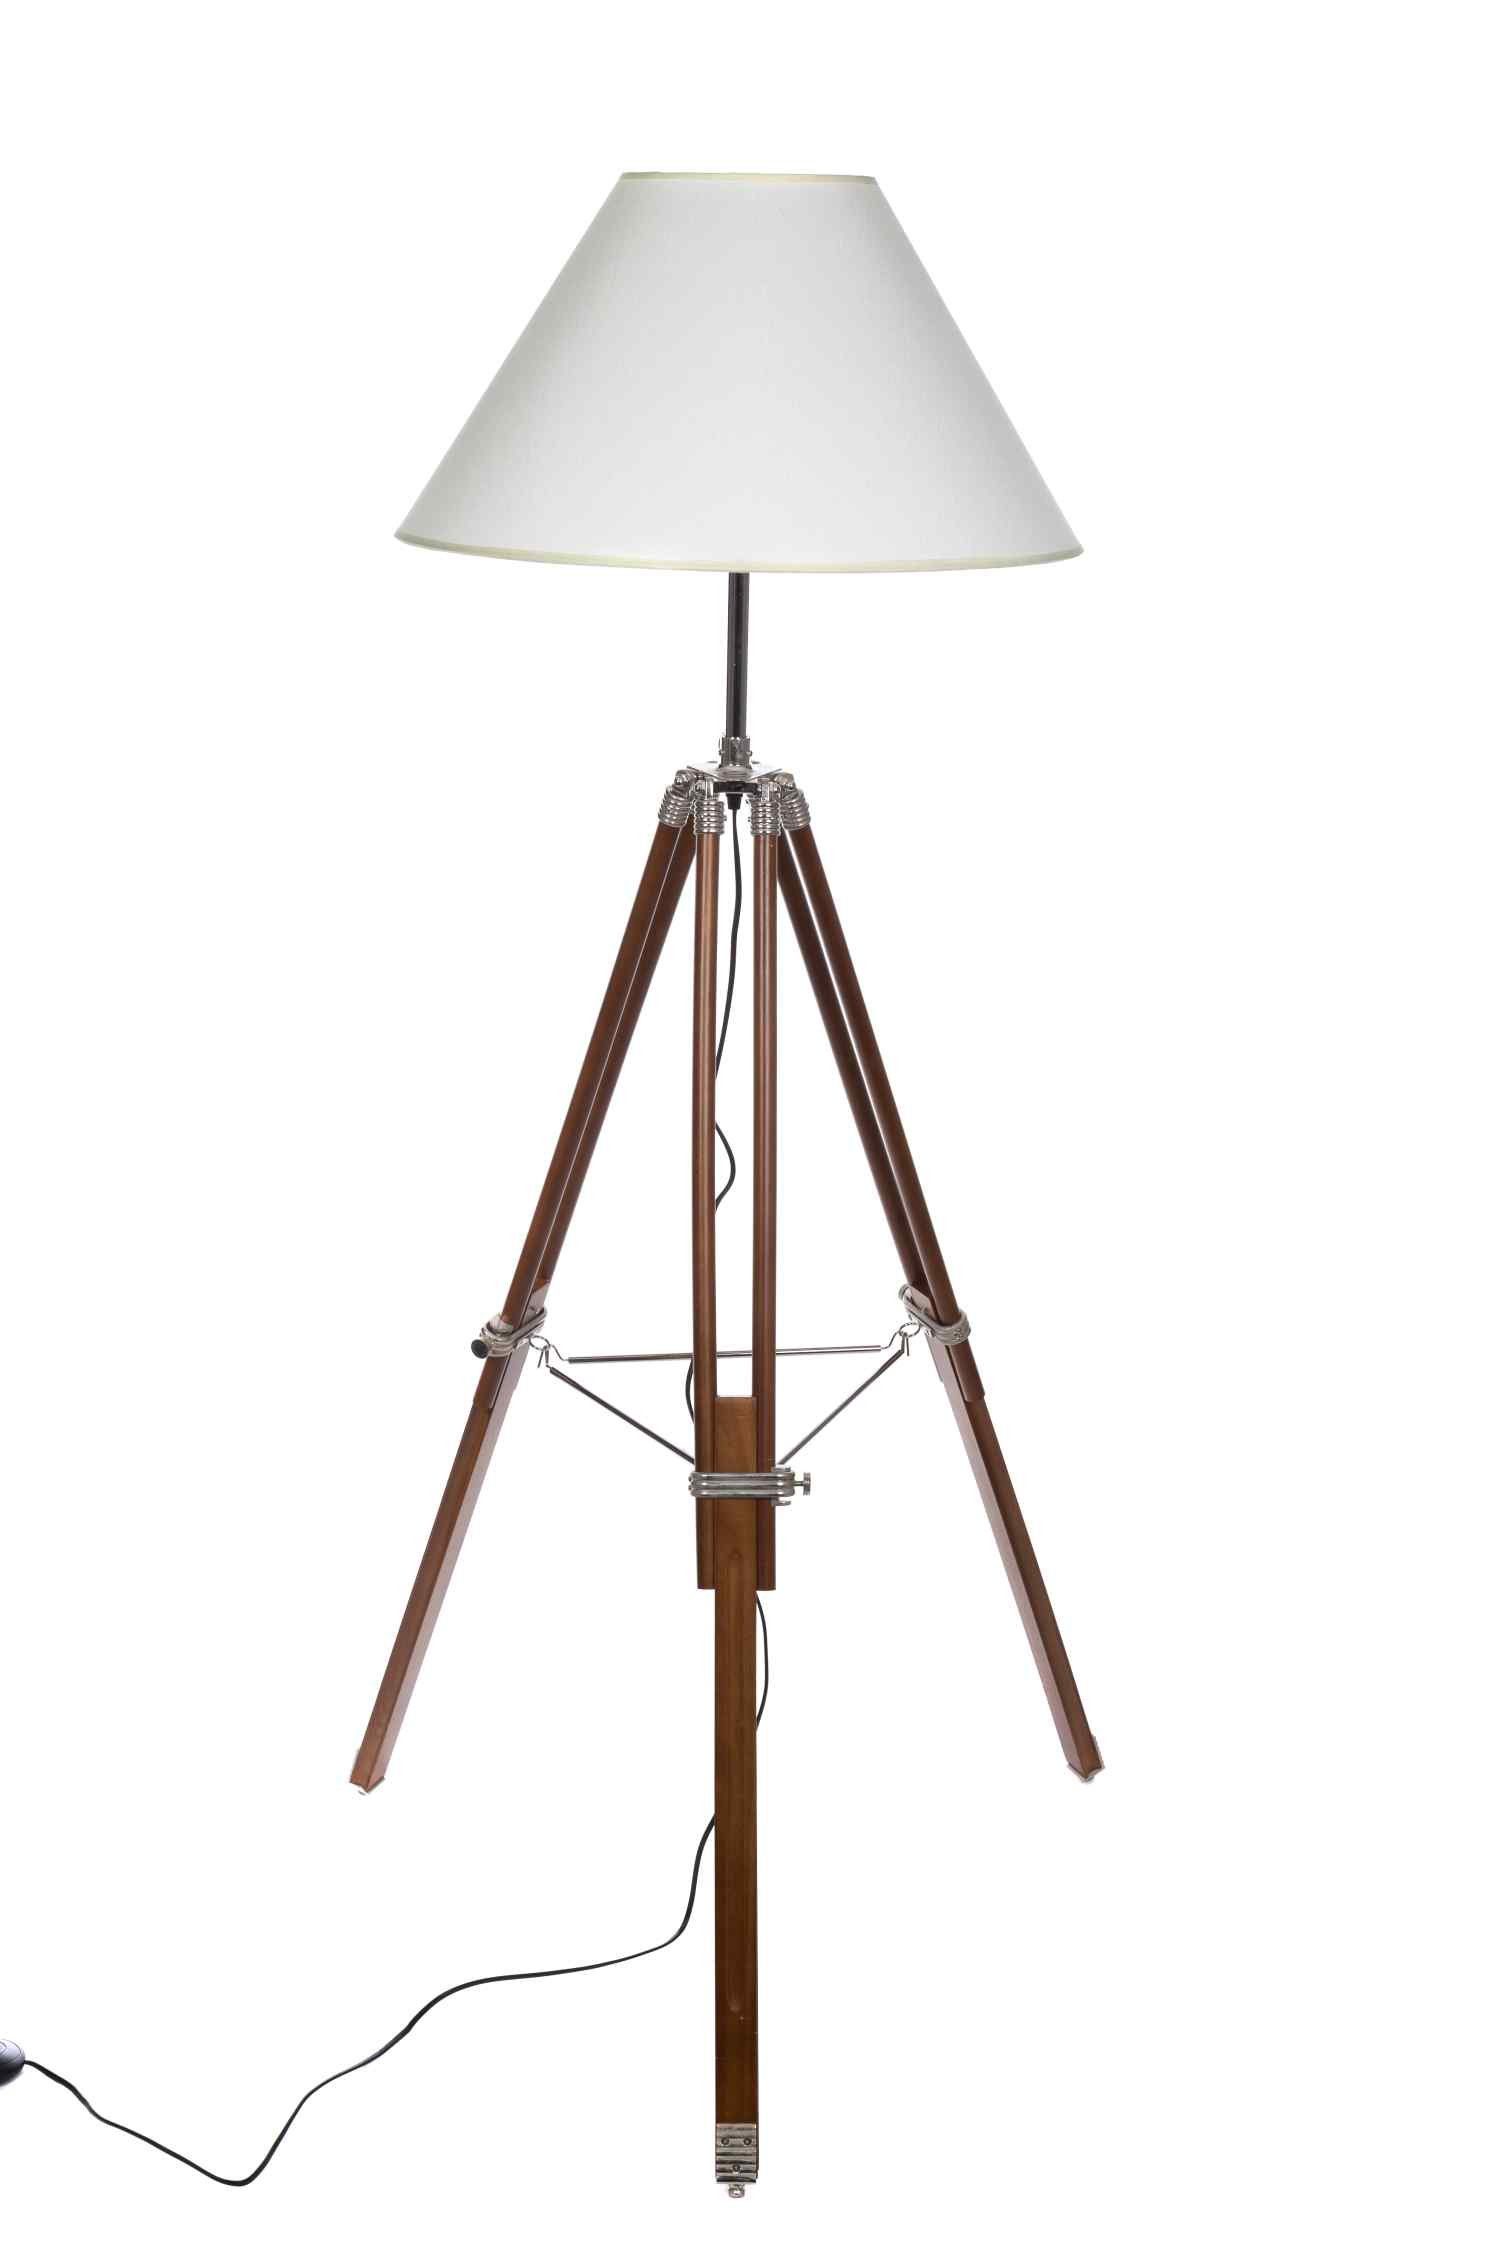 BIRENDY Stehlampe »Riesige XXL Stativlampe Stehlampe im Dreibein Stativ  Look F705 weißer Schirm« online kaufen | OTTO